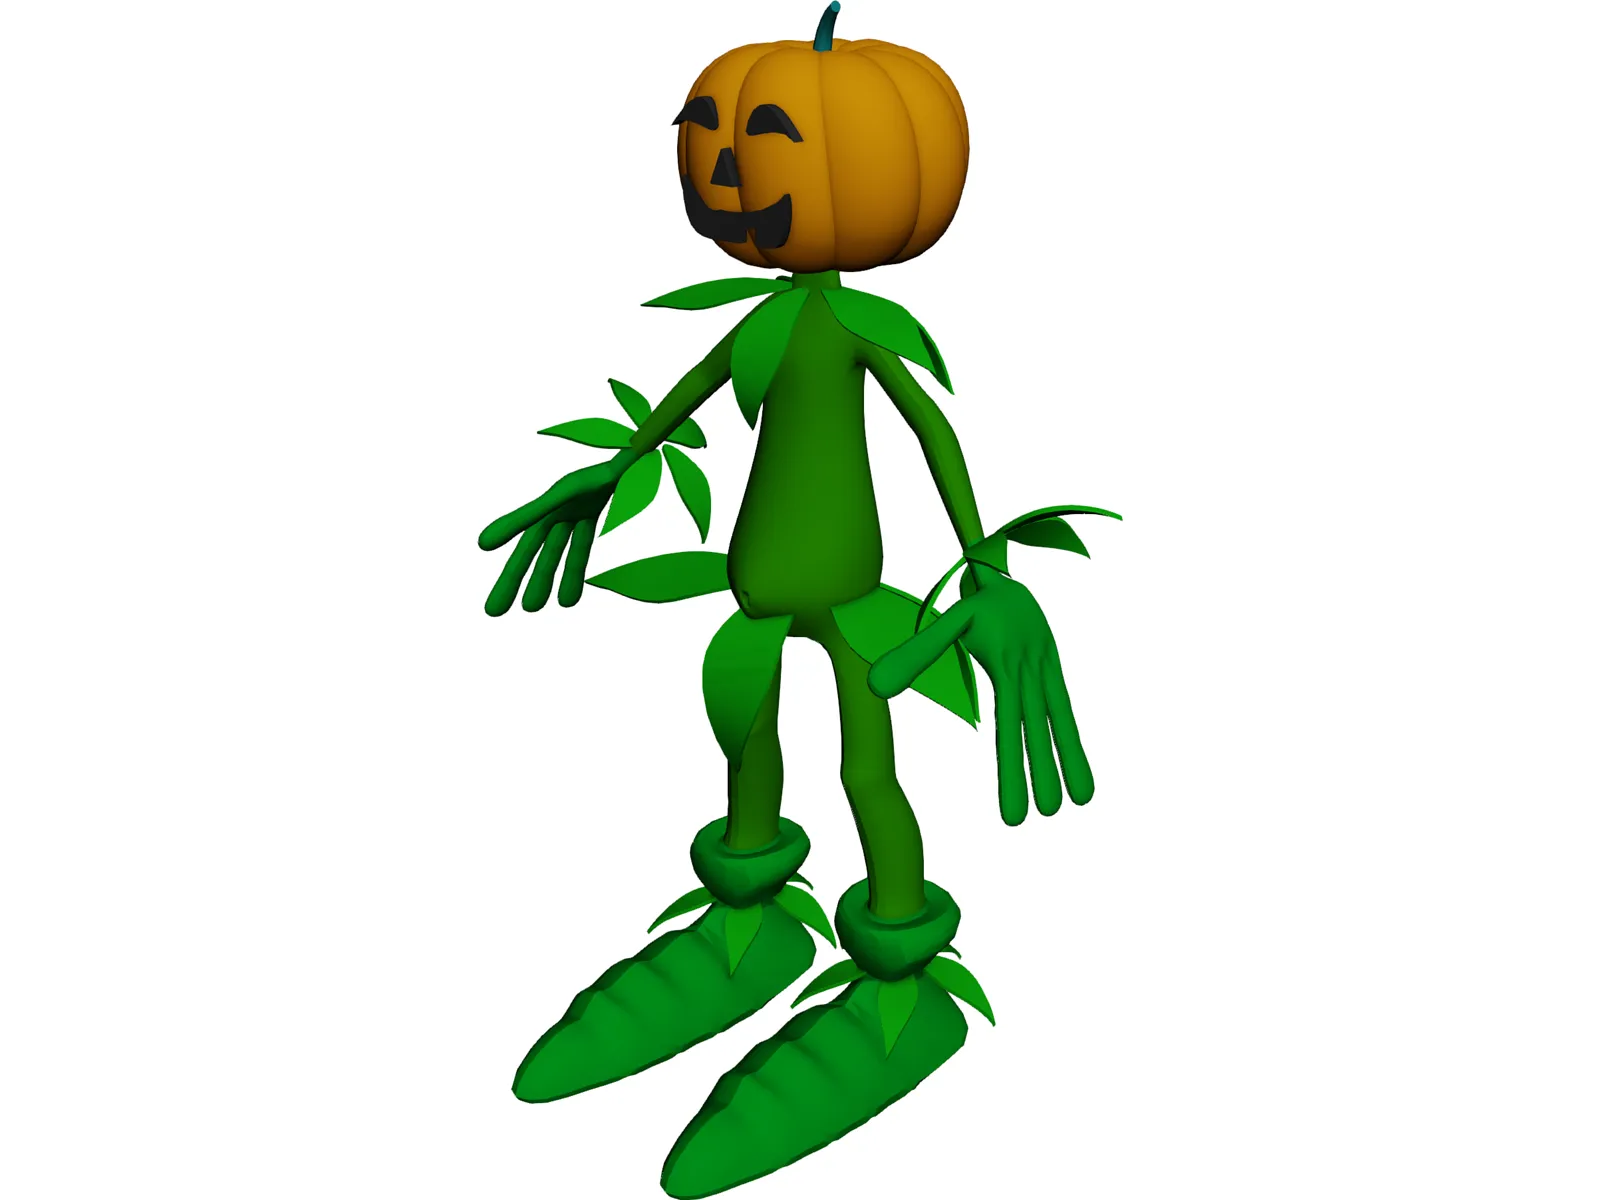 Pumpkin Man 3D Model